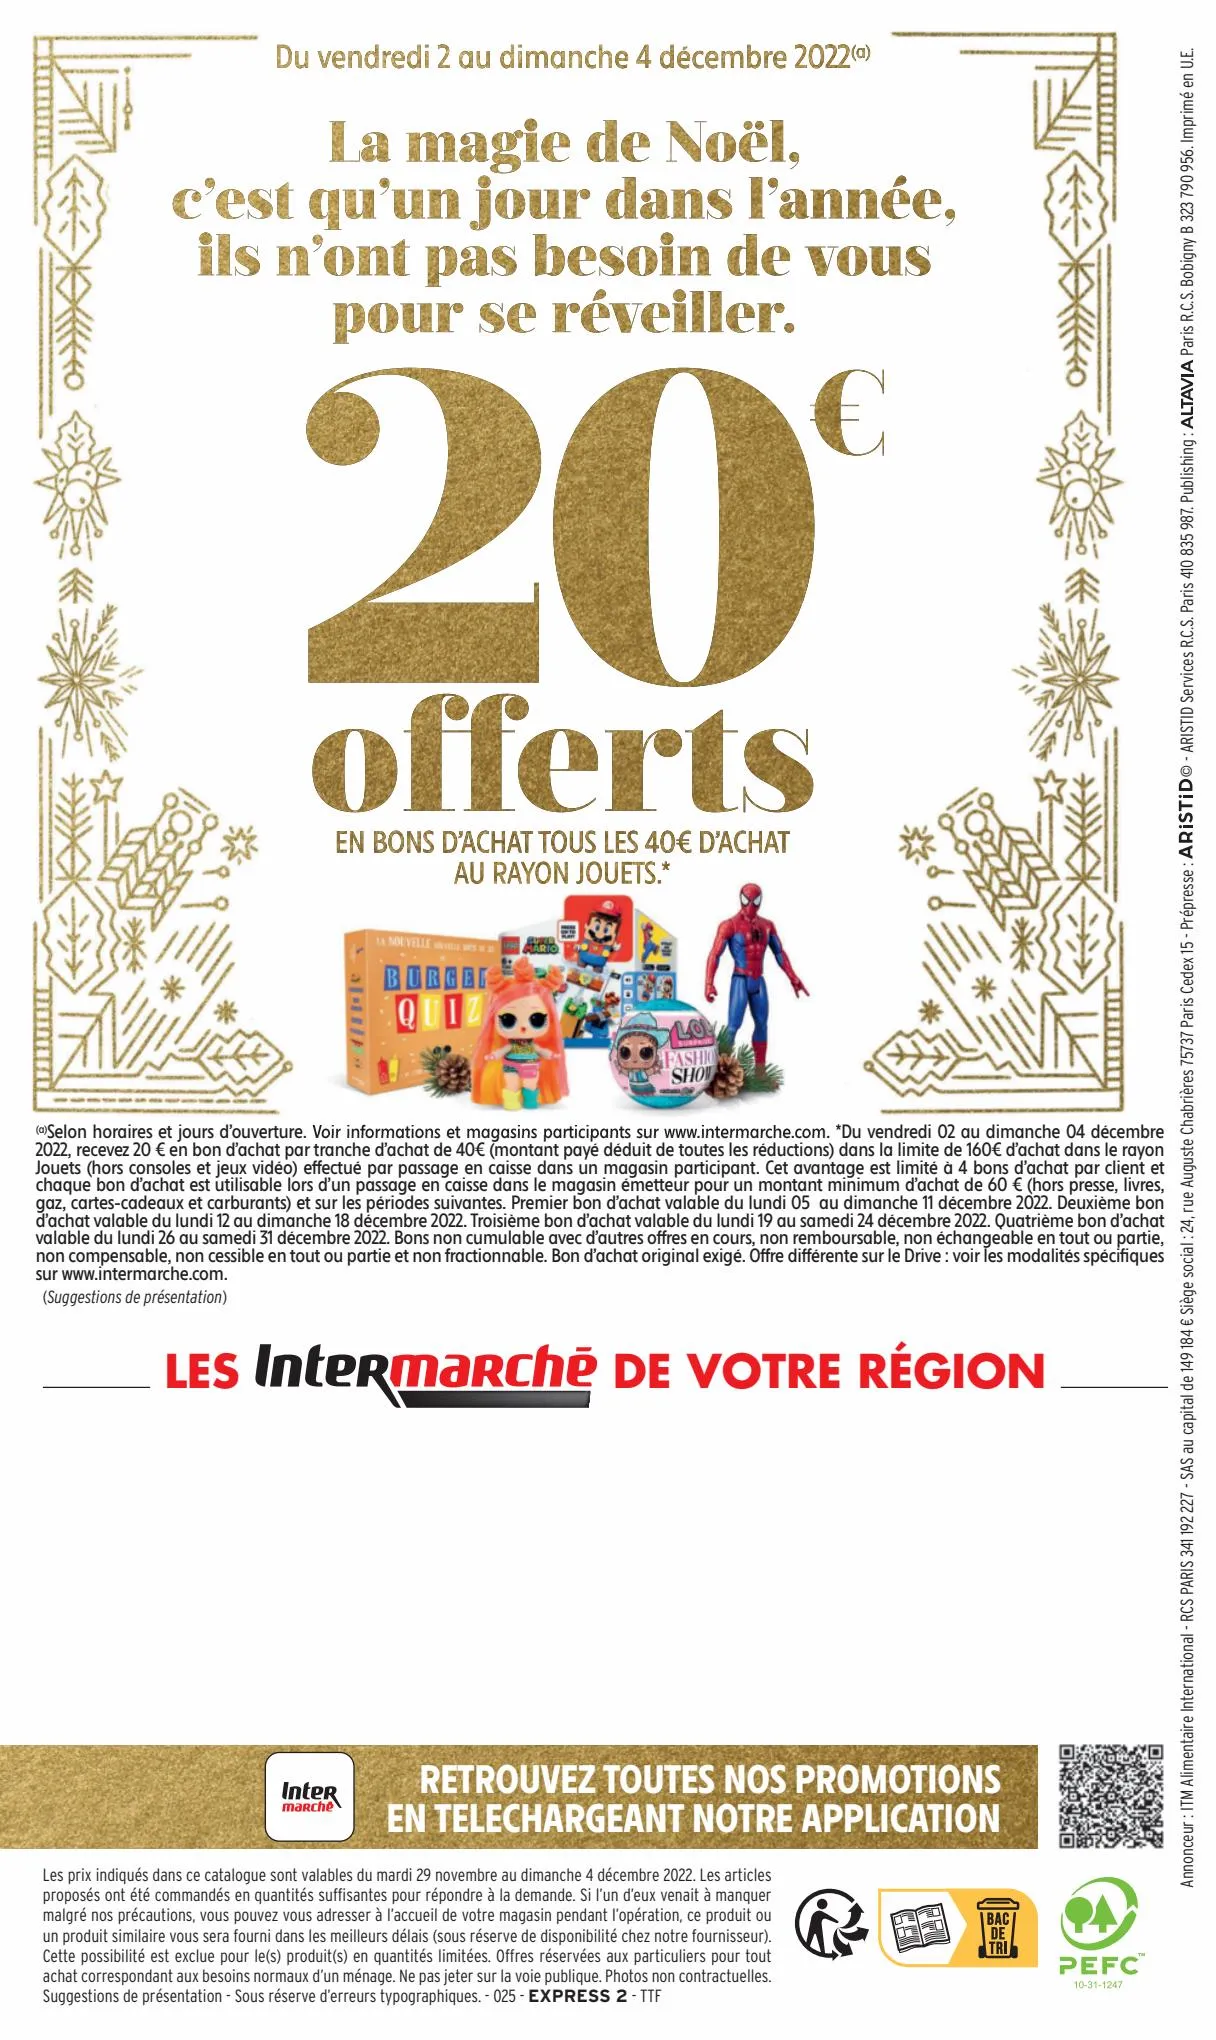 Catalogue 130€ offerts en bons d'achat., page 00020